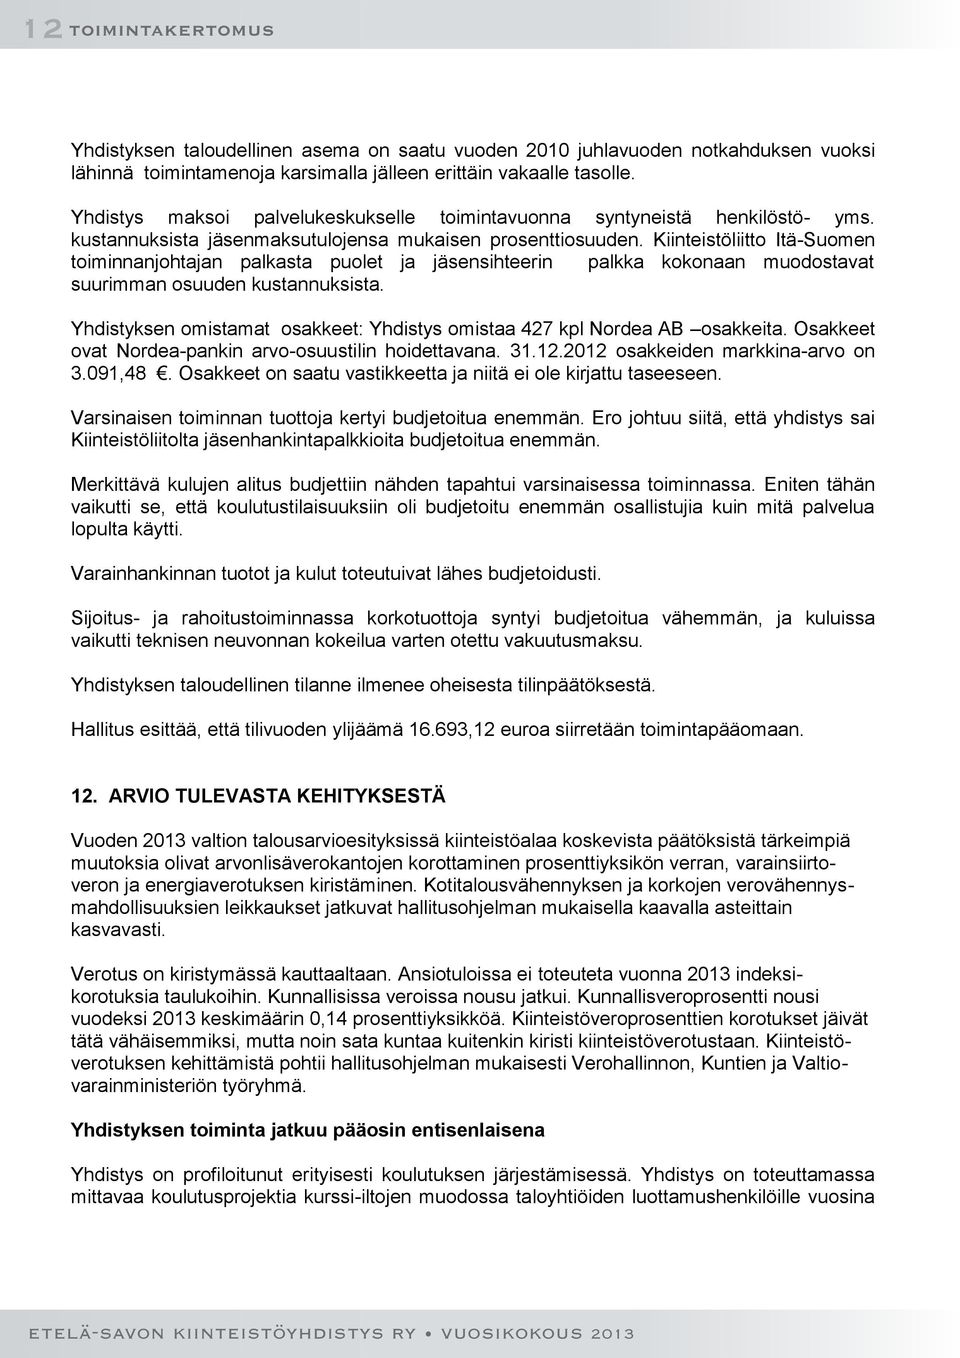 Kiinteistöliitto Itä-Suomen toiminnanjohtajan palkasta puolet ja jäsensihteerin palkka kokonaan muodostavat suurimman osuuden kustannuksista.